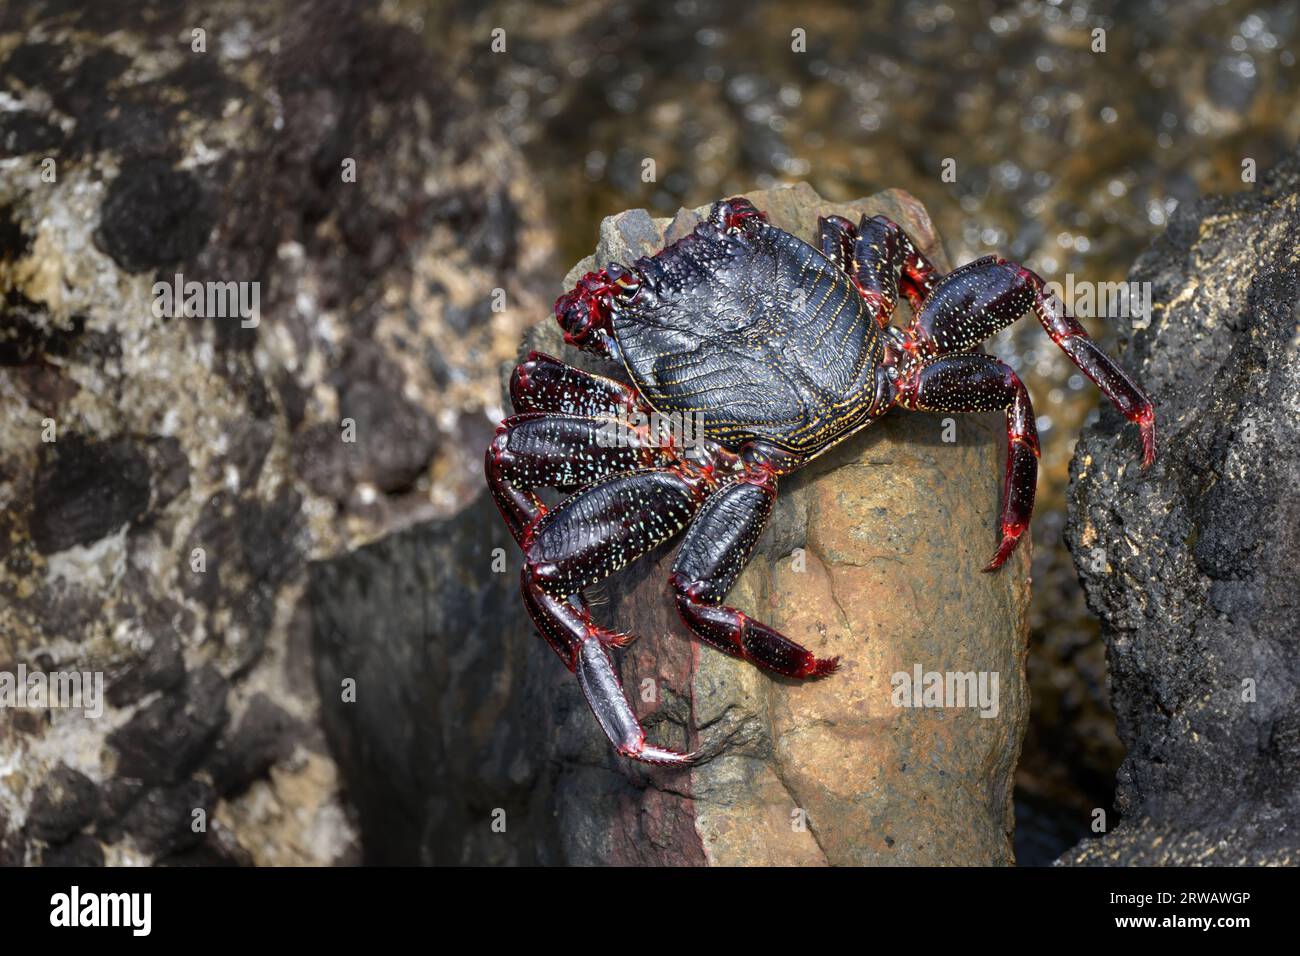 Crabe rouge de roche de l'Atlantique (Grapsus adscensionis) jeune animal avec début de tourner au rouge sur une pierre - Fuerteventura Banque D'Images